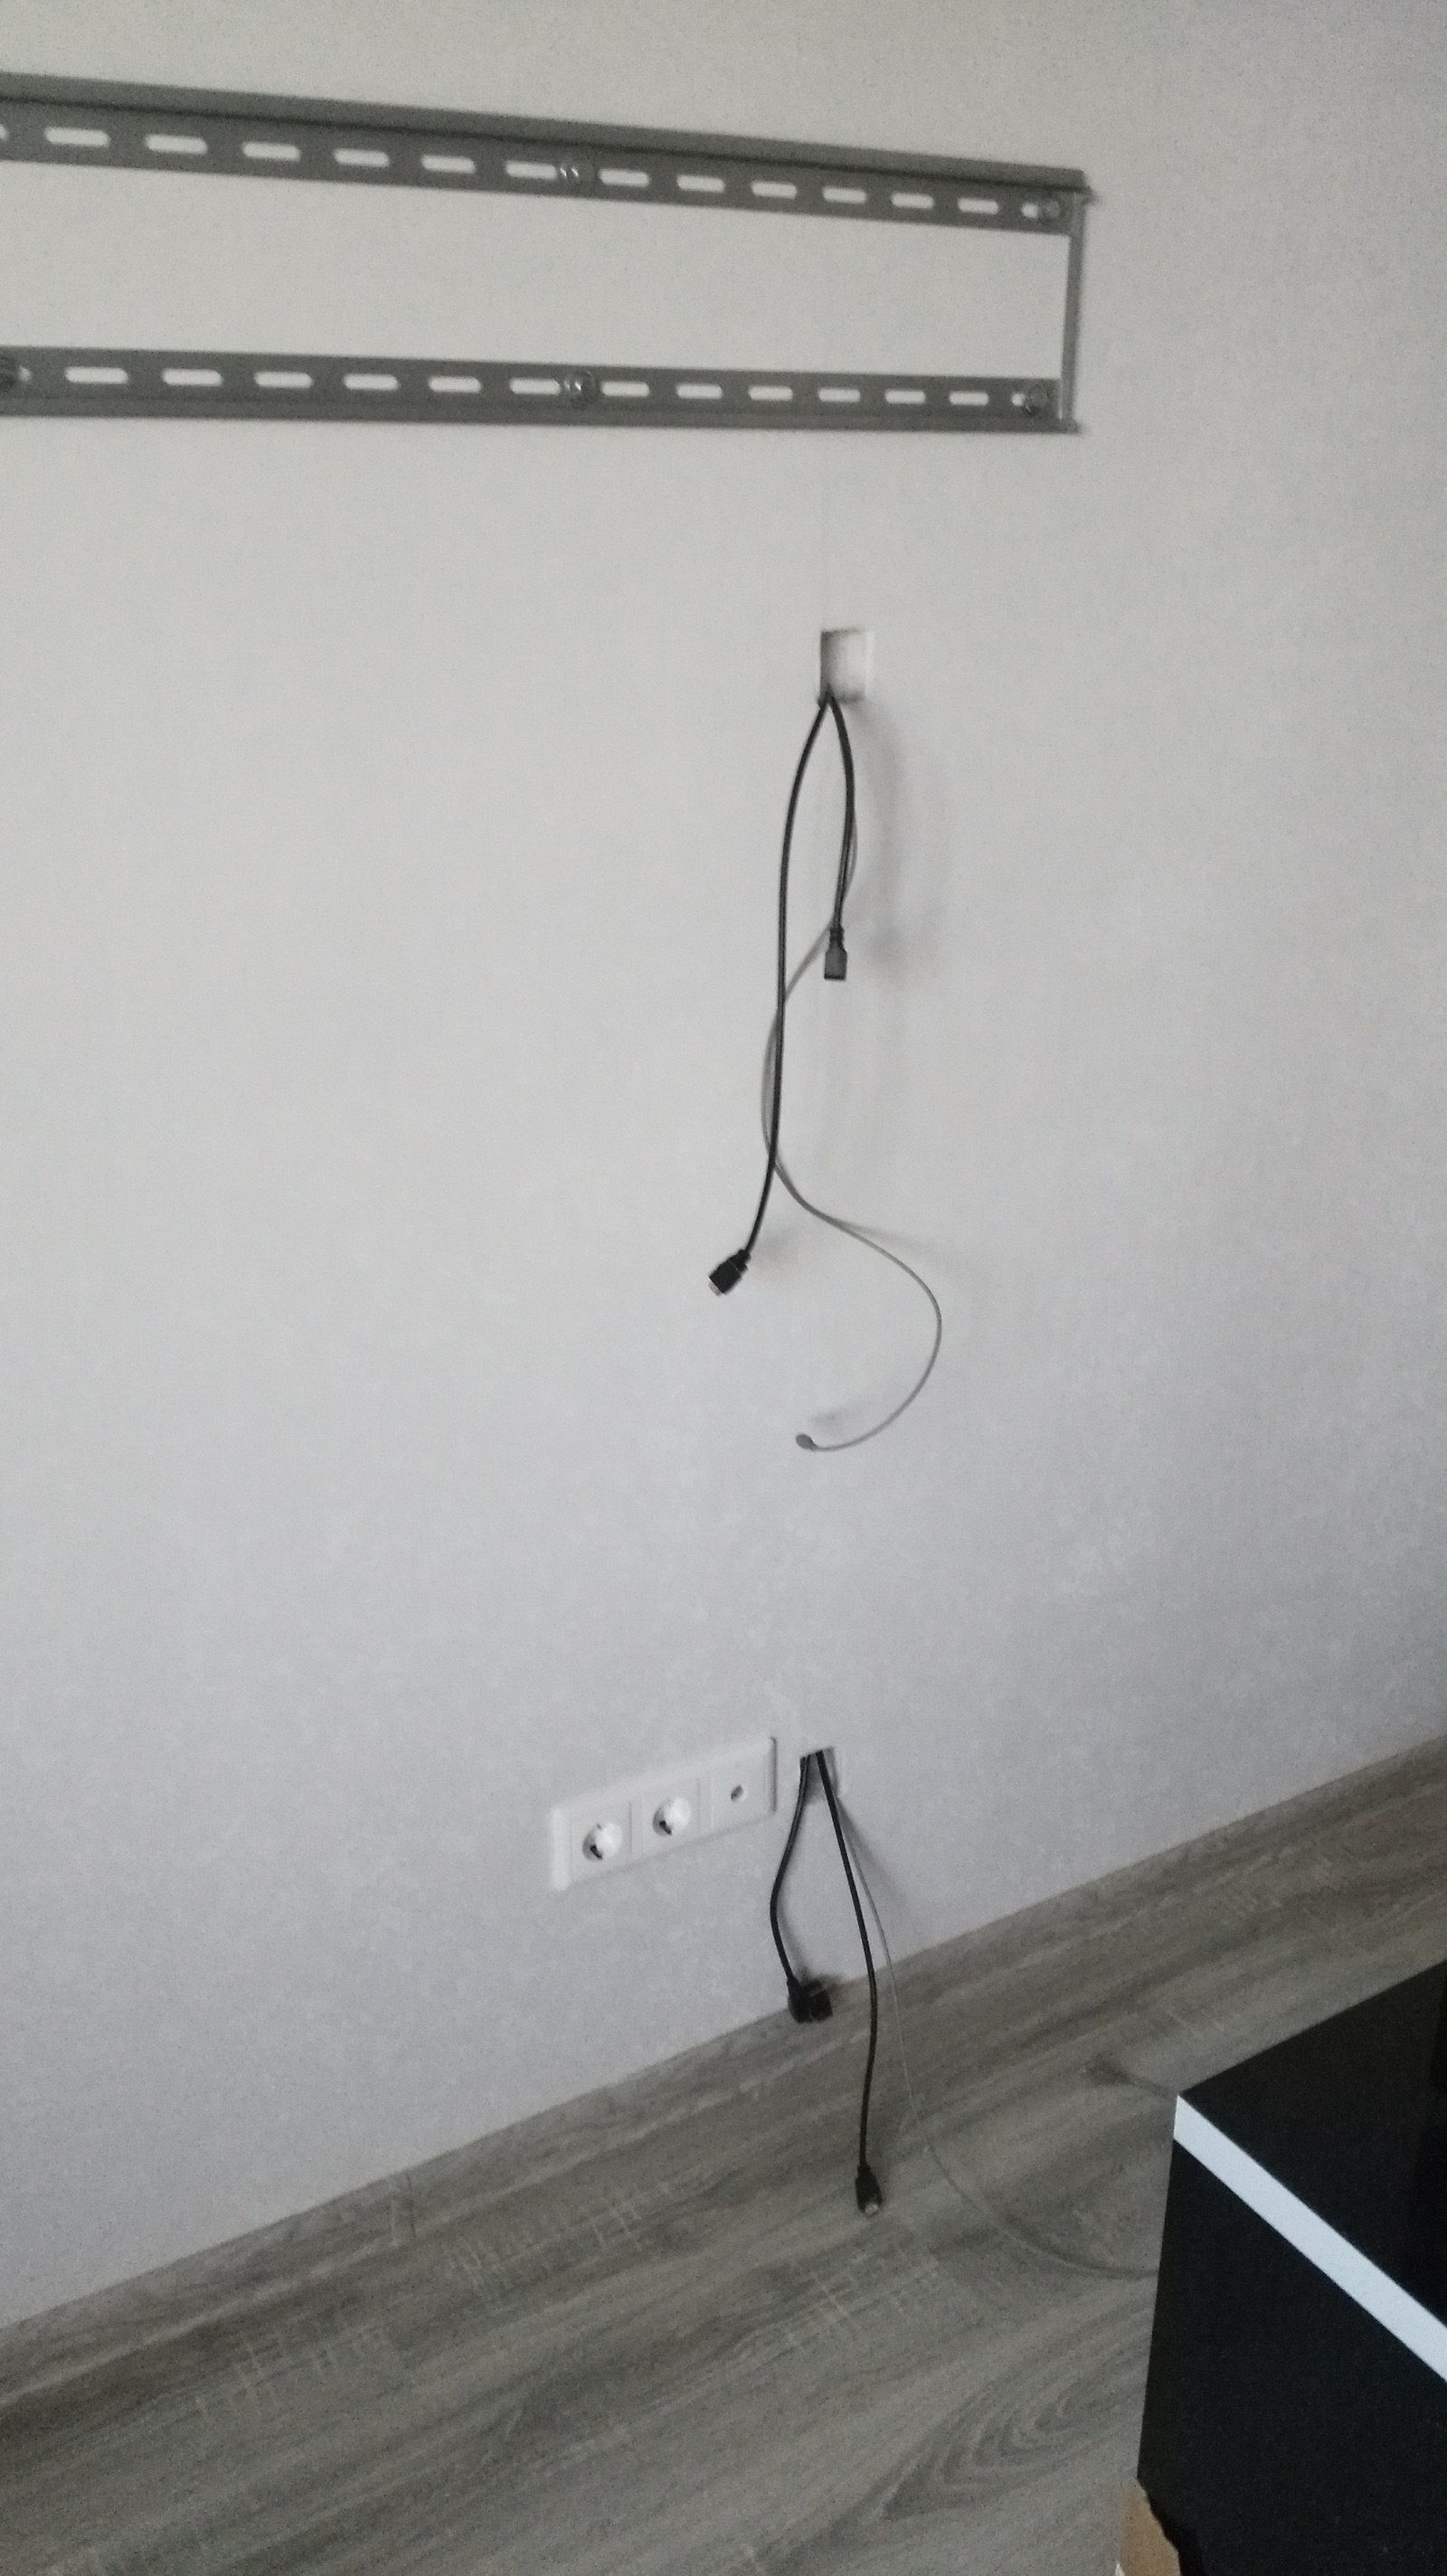 Кабель канал под провод. Кабель канал для вывода кабеля 35 мм хром. Кабель канал для проводов в сене. Кабель канал в стене для телевизора. Кабель канал для проводов телевизора на стену.